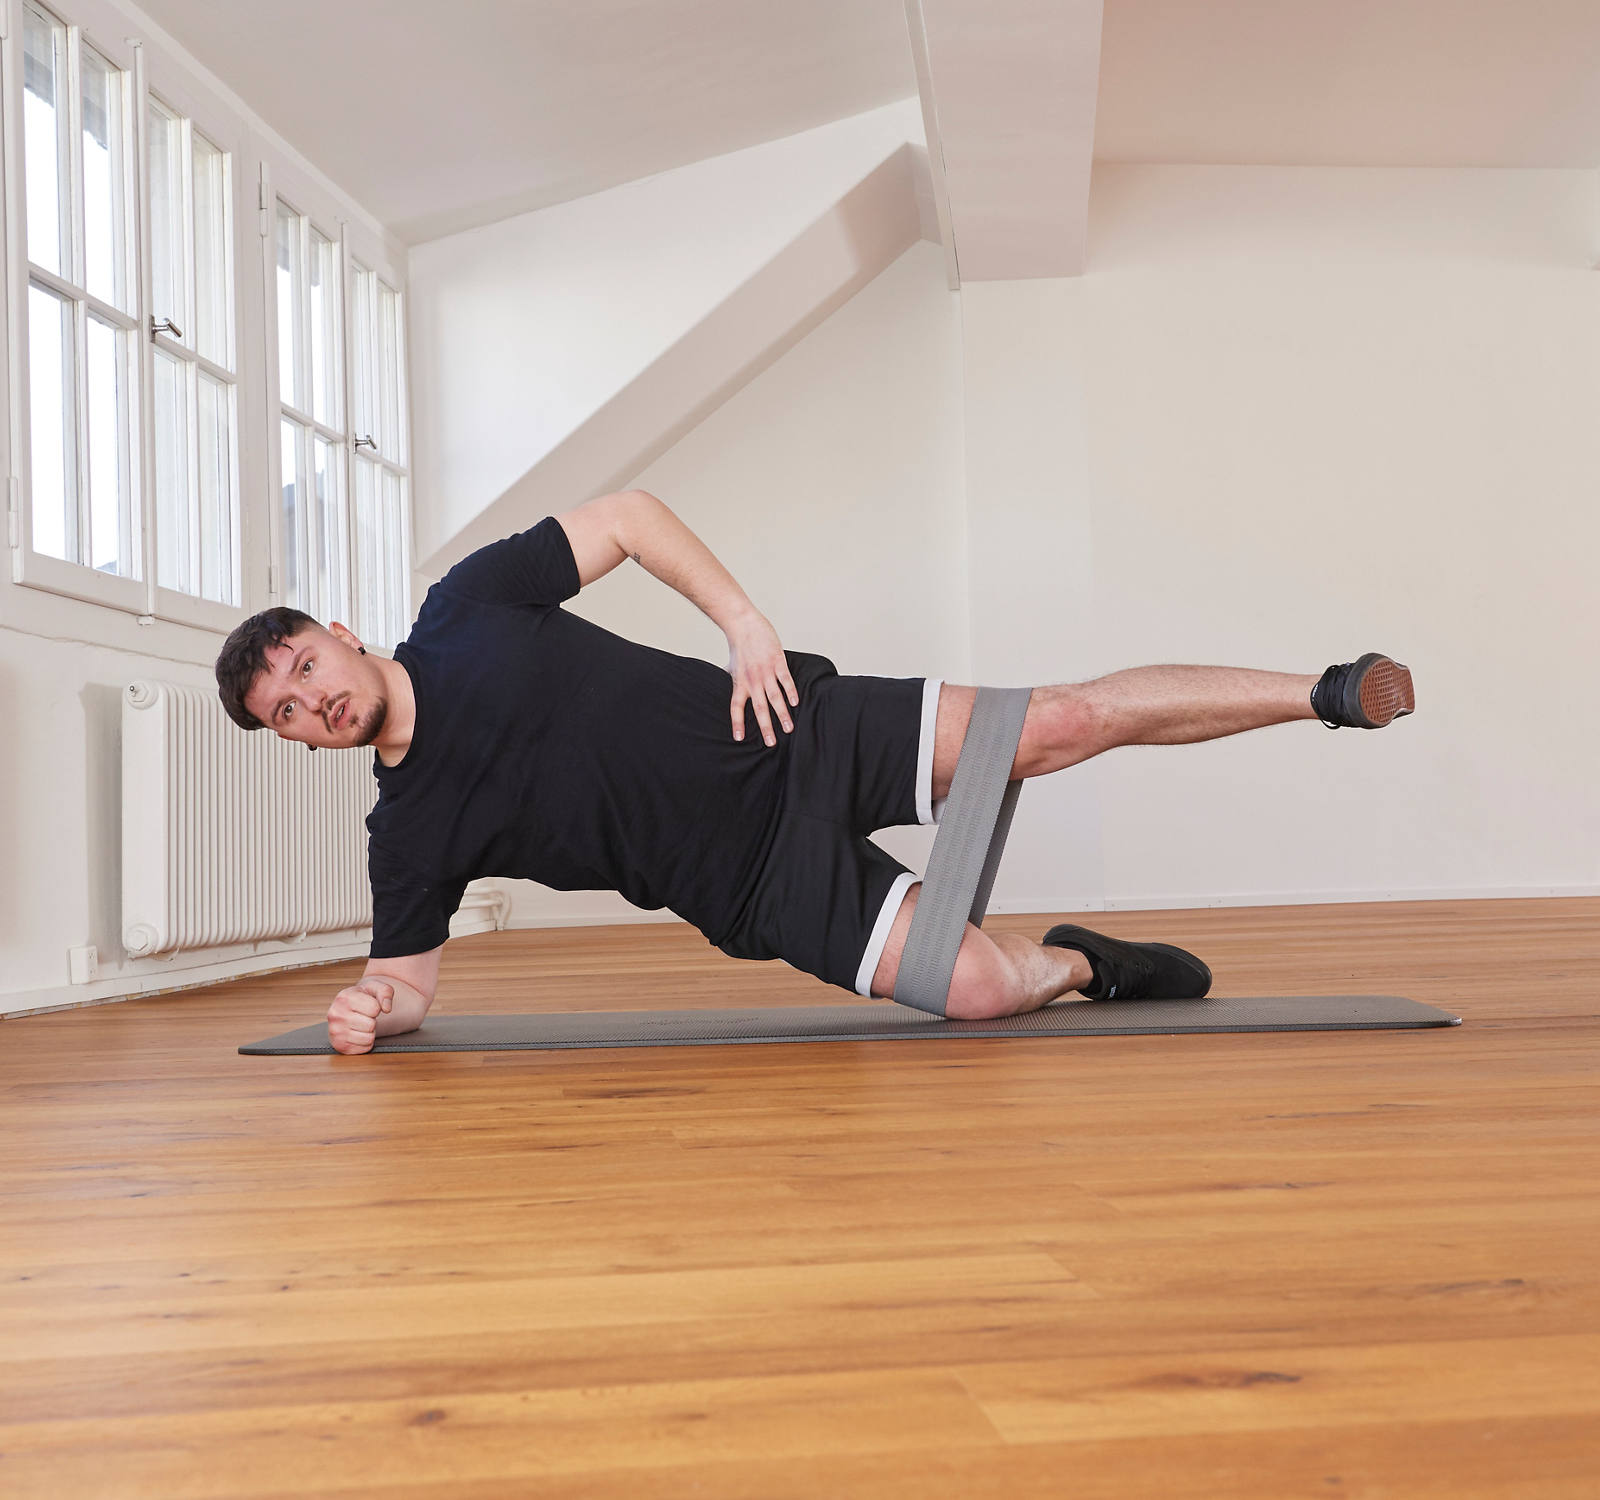 Exercices avec le mini-bande: planche latérale position 2